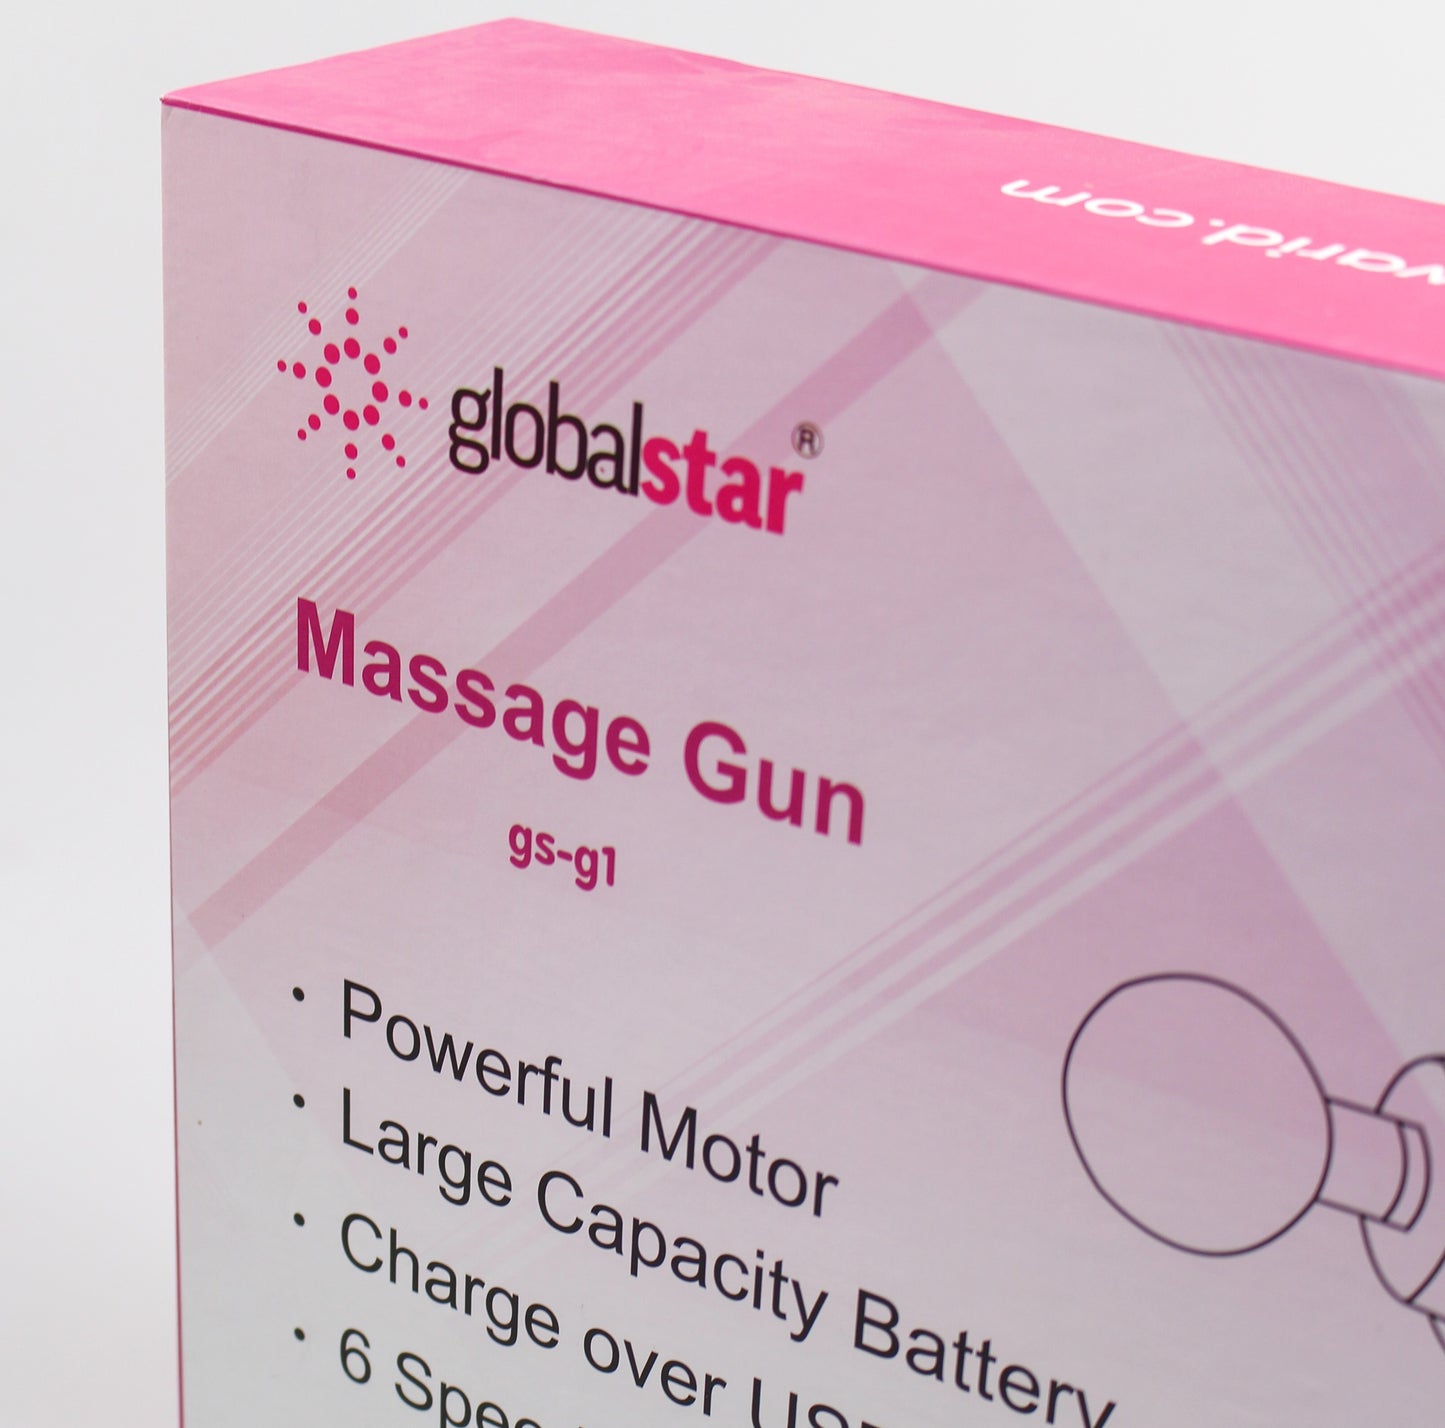 globalstar - MASSAGE GUN